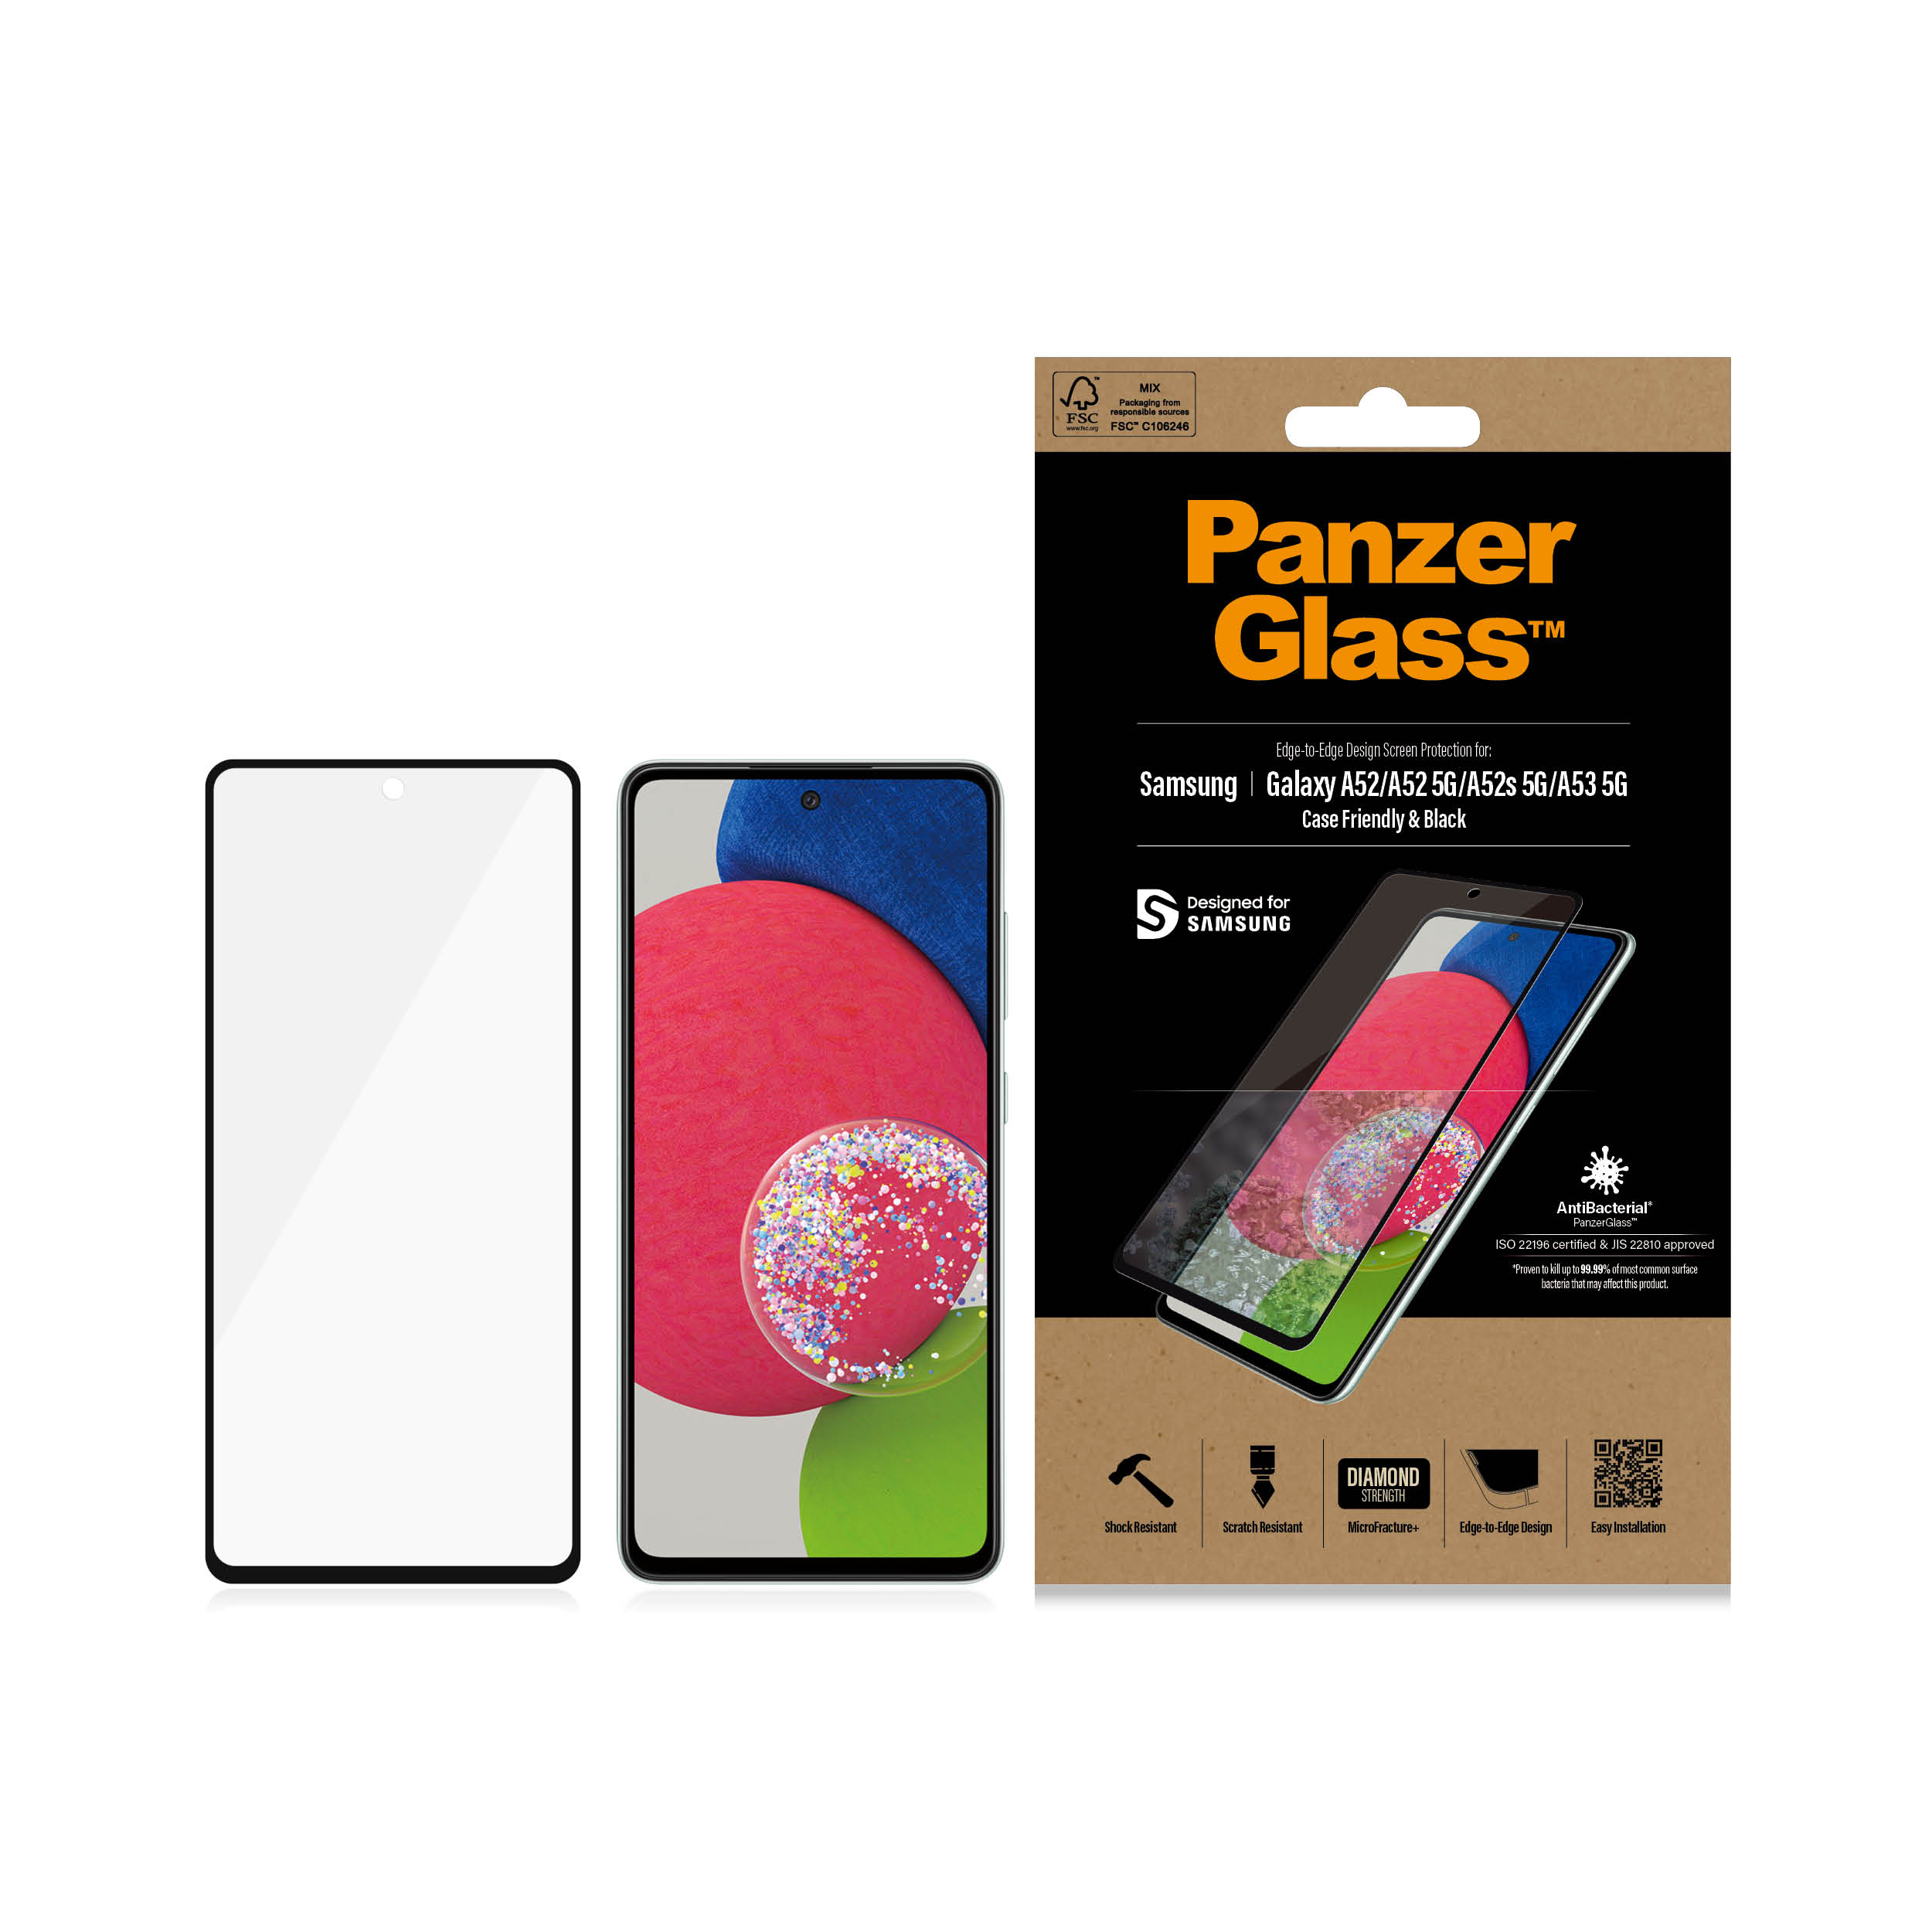 PanzerGlass Samsung Galaxy A52/A52 5G/A52s 5G/A53 5G